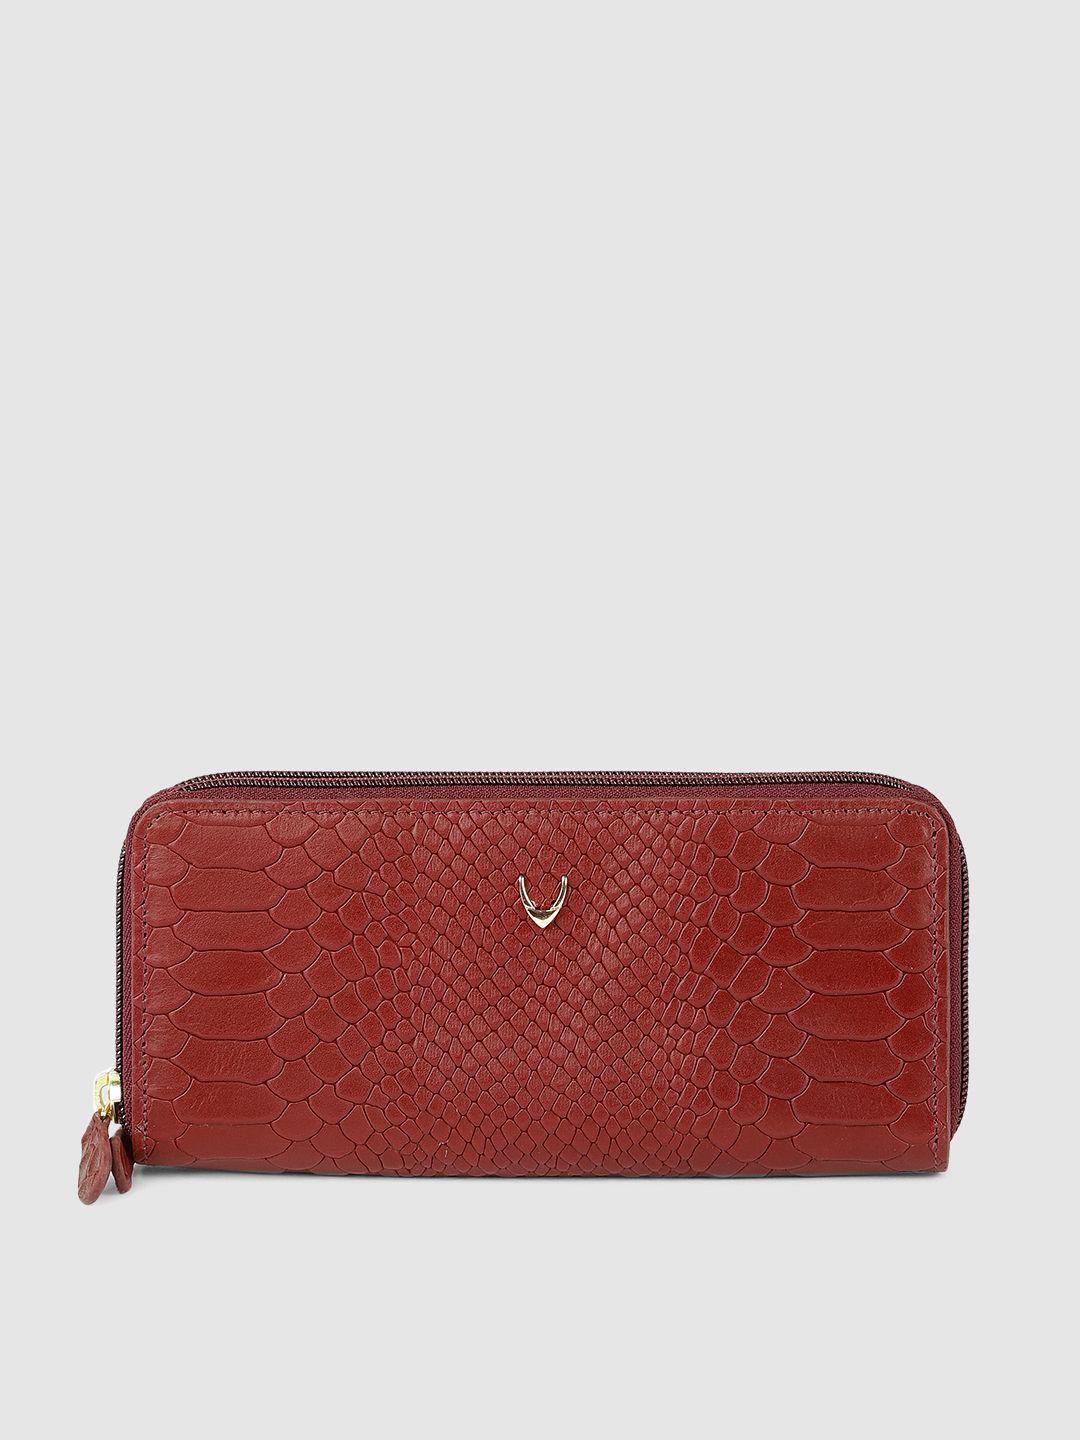 hidesign women red animal textured zip around wallet